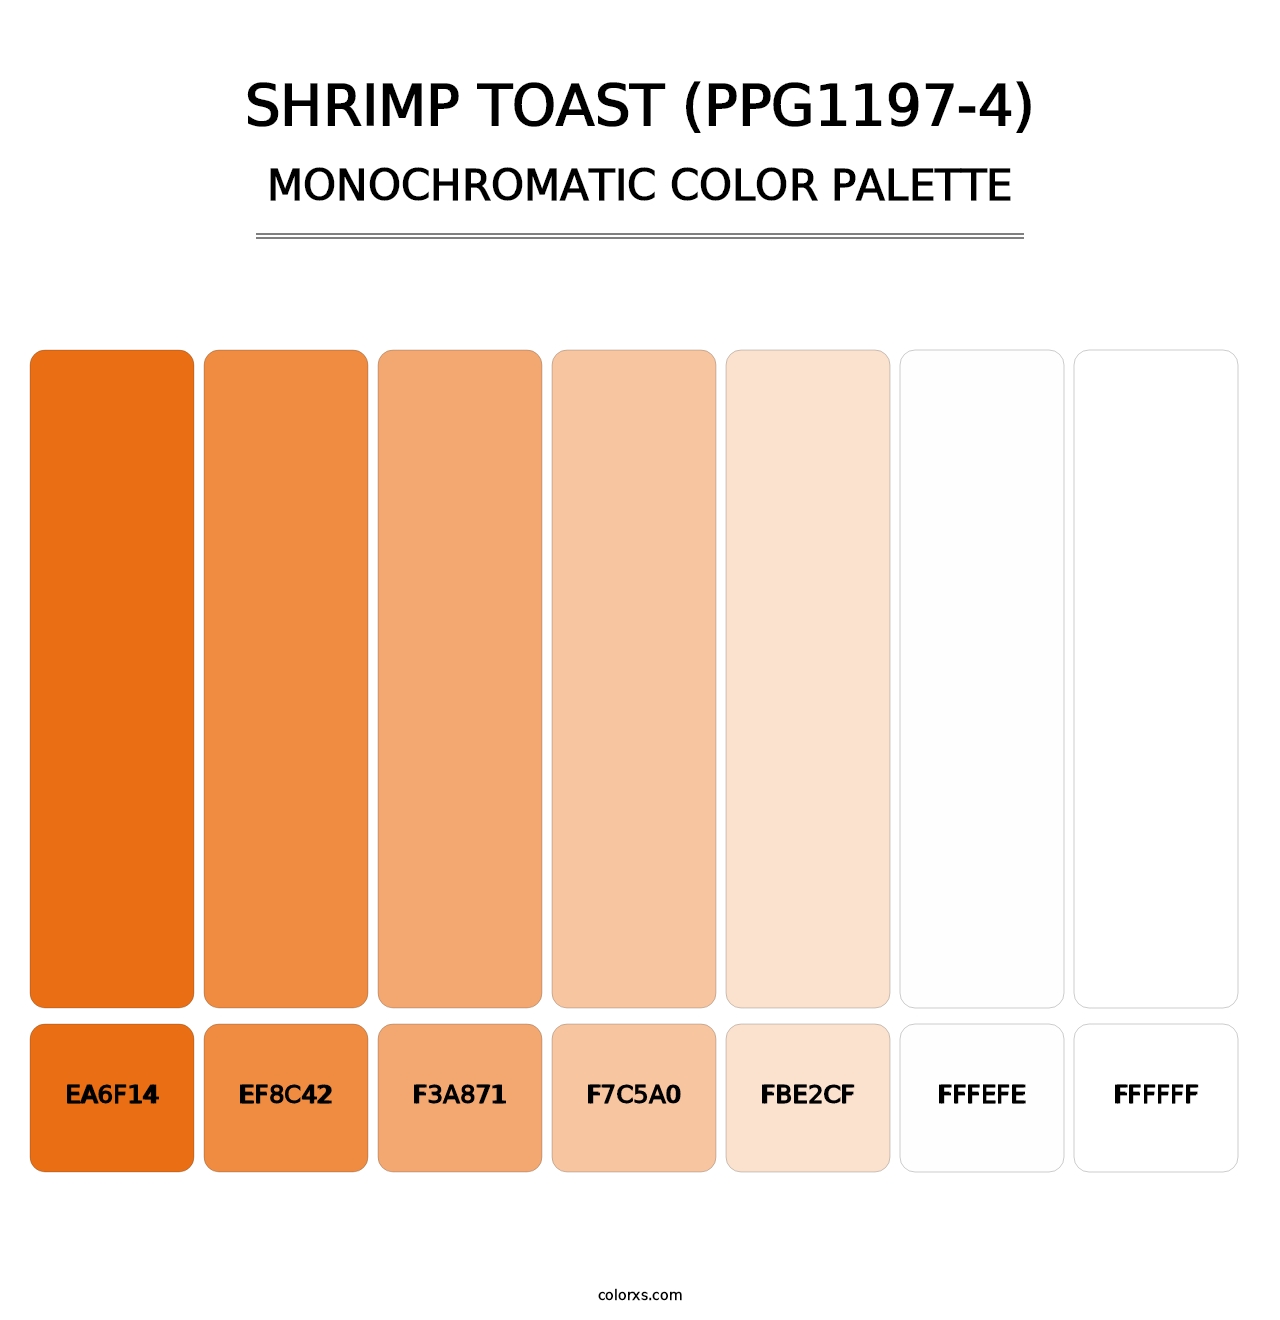 Shrimp Toast (PPG1197-4) - Monochromatic Color Palette